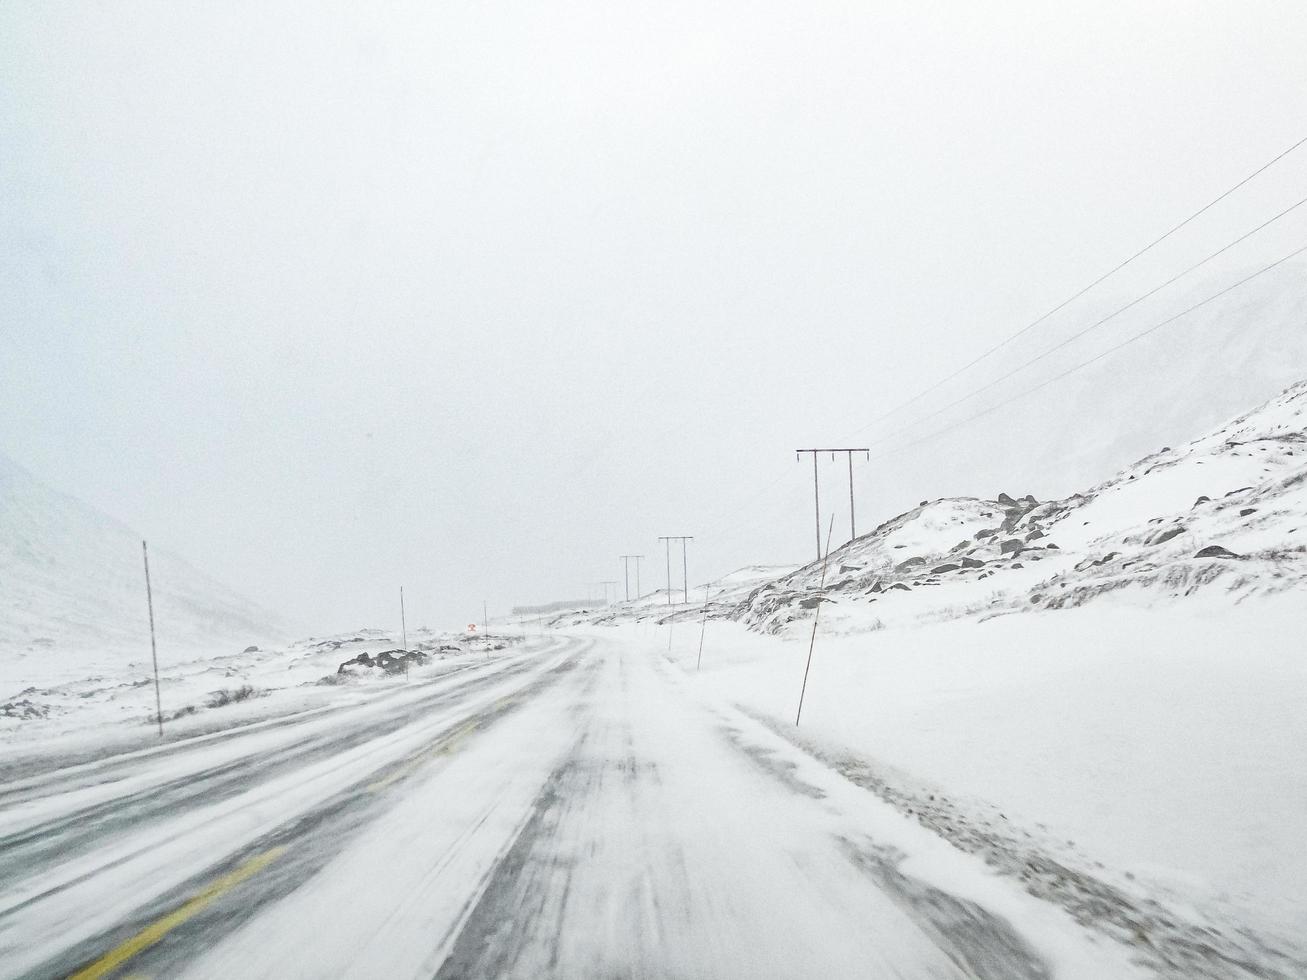 conduciendo a través de una tormenta de nieve con hielo negro en la carretera, noruega. foto